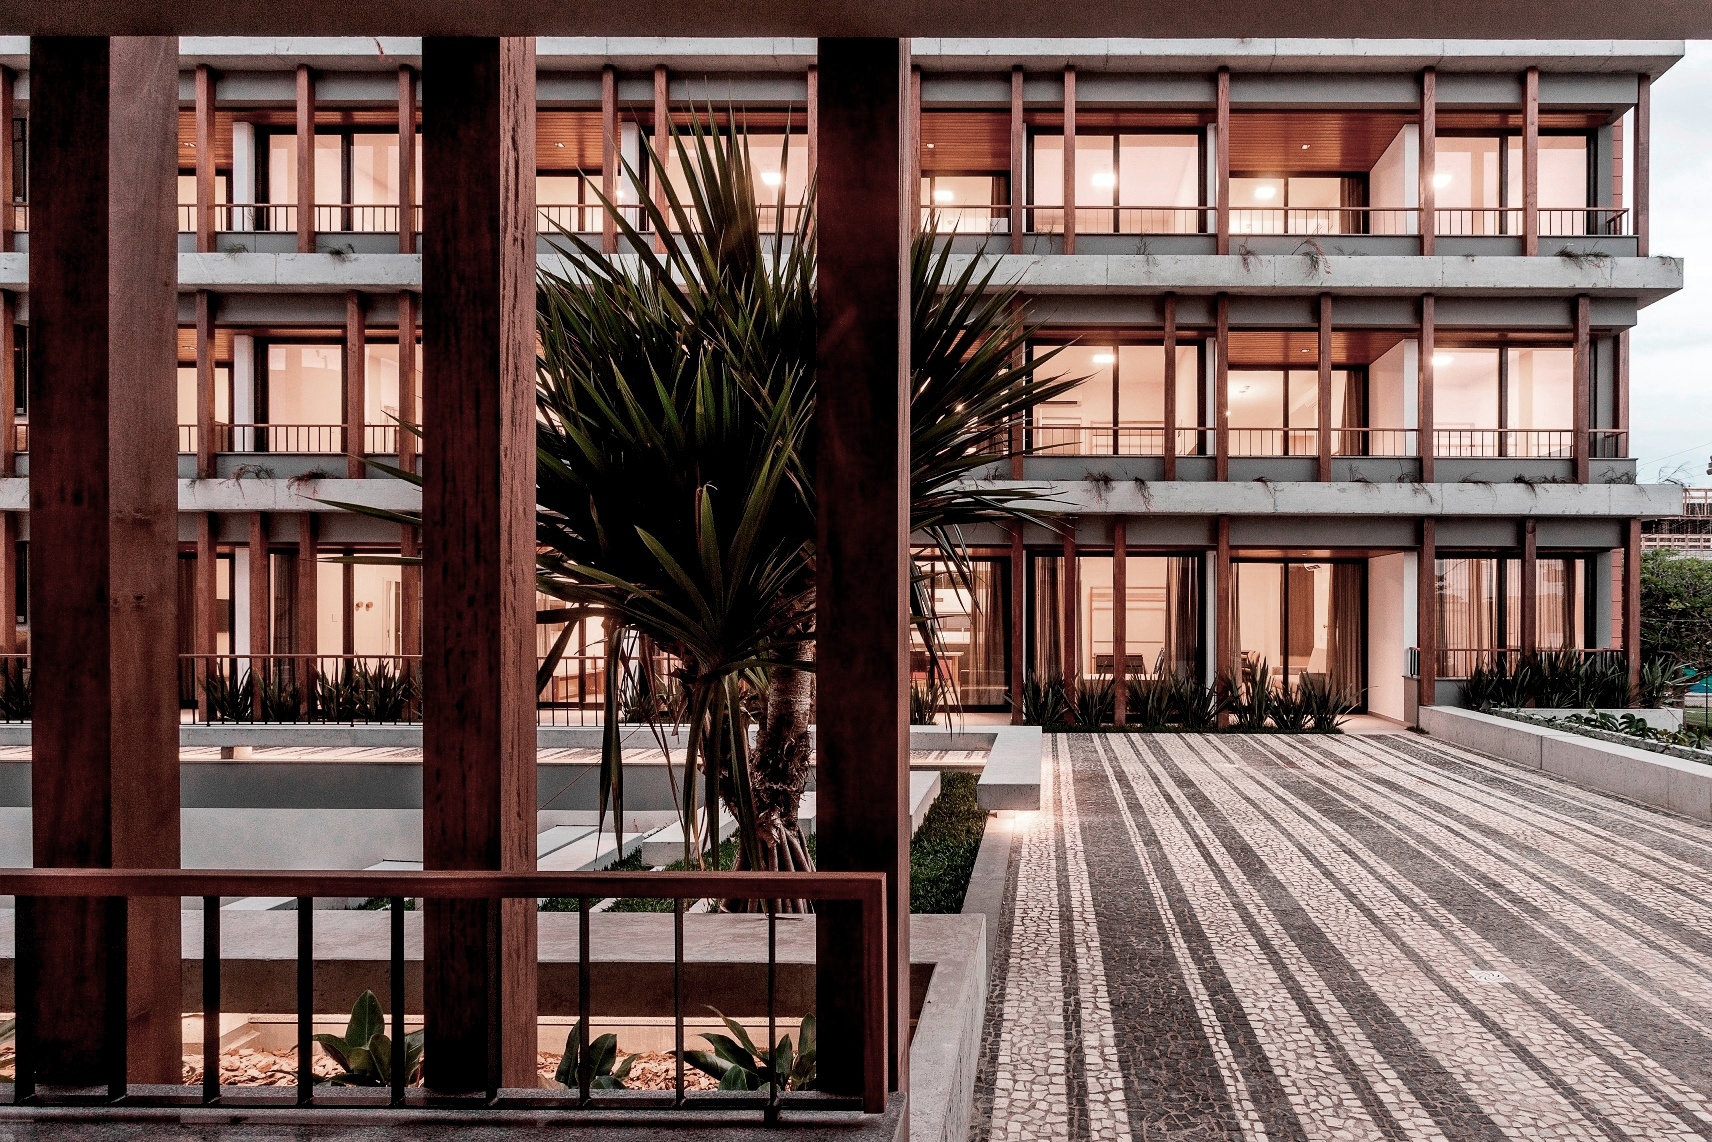 O projeto explora a expressão dos materiais: mistura floreiras e escadas em concreto aparente em contraposição a vegetação e a madeira que marcam a composição modular como elemento básico da edificação. Fotos Fernando Willadino.